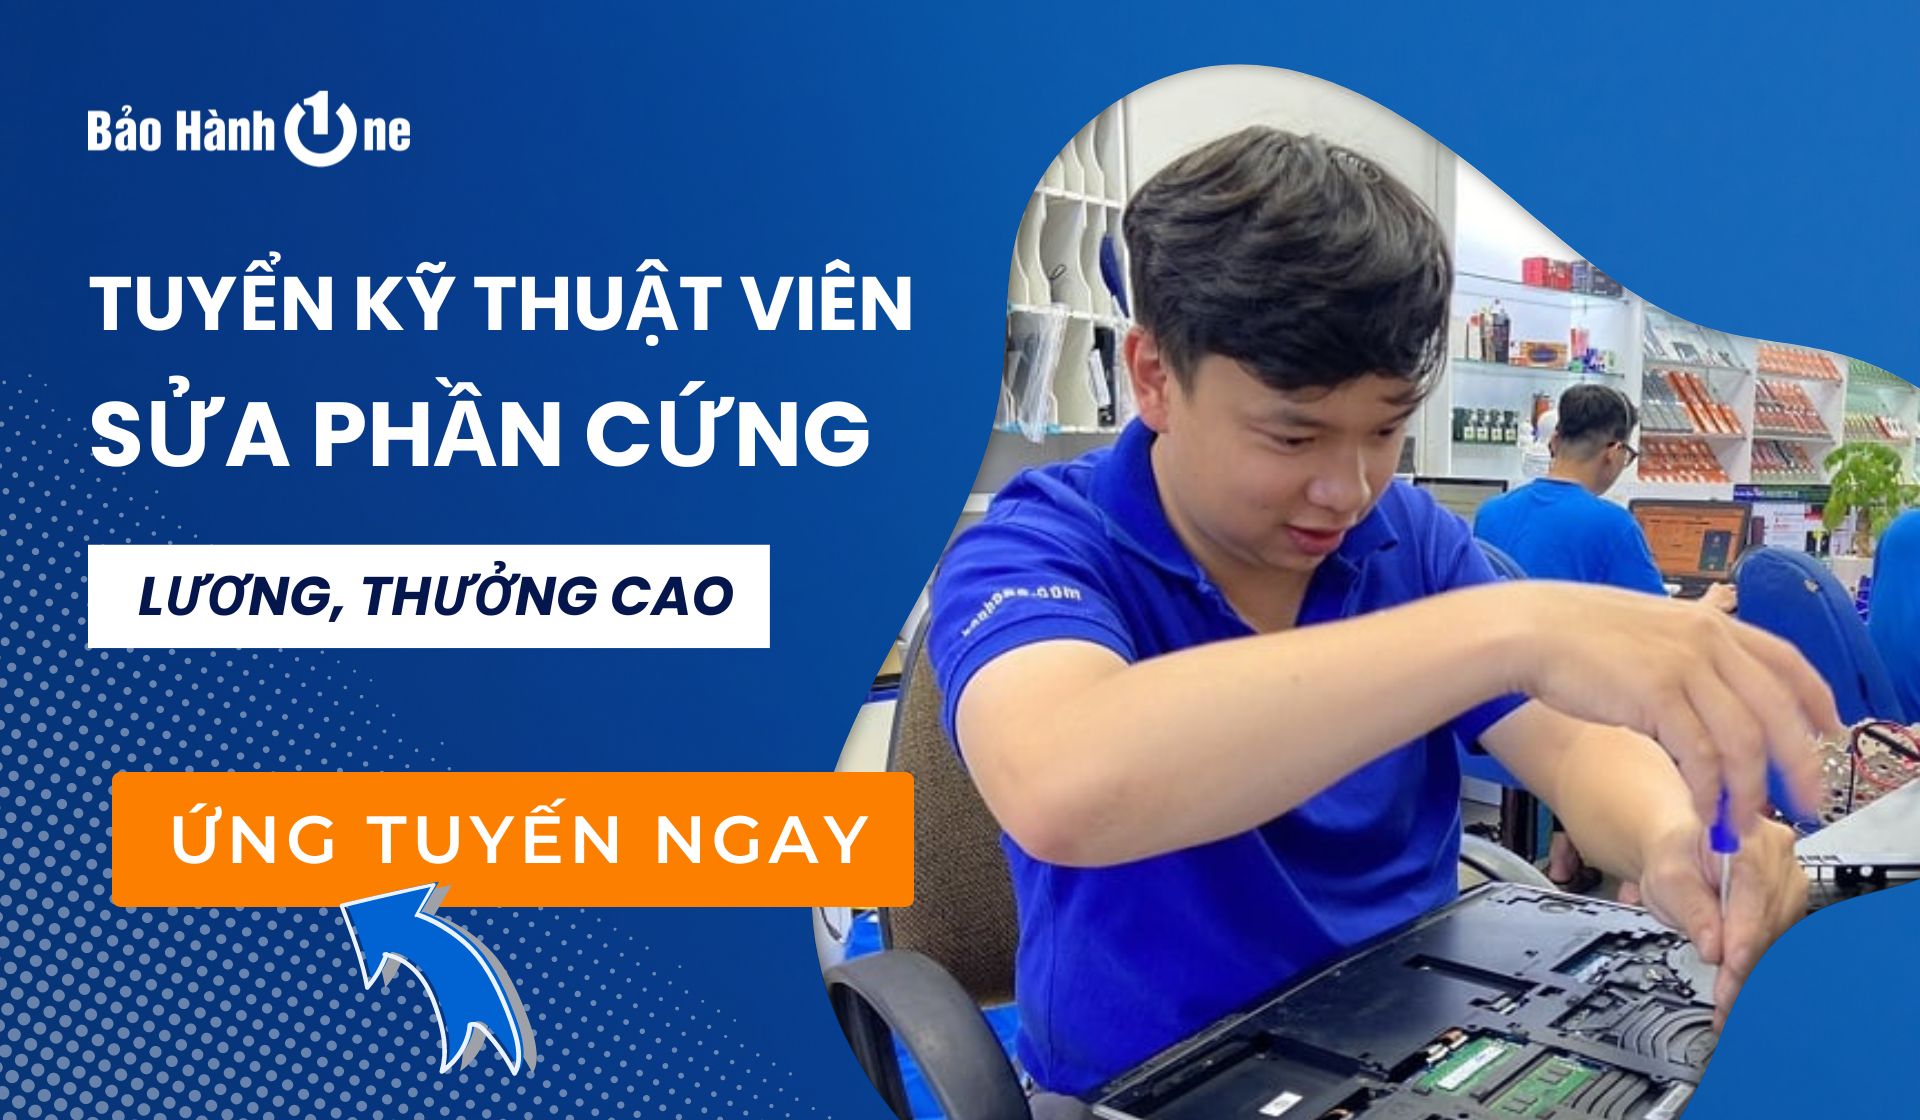 Tuyển dụng kỹ thuật viên sửa chữa phần cứng tại Quận Tân Phú, Quận 1, Quận 10